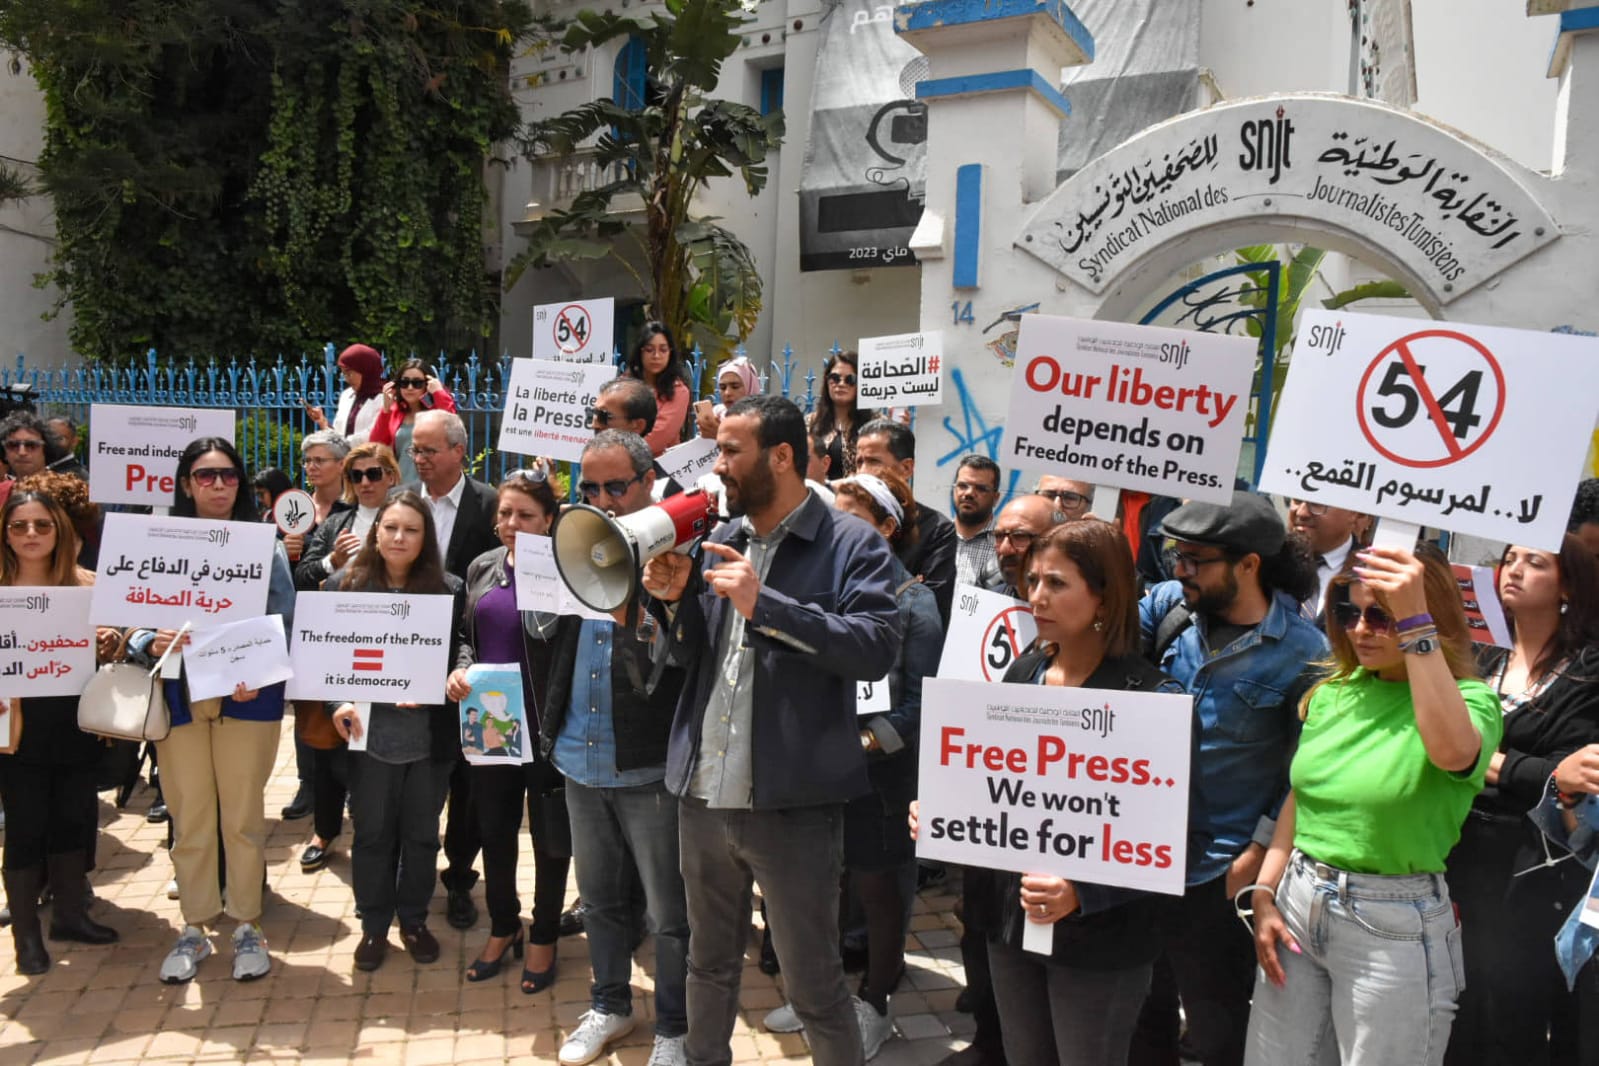 رسالة احتجاج وإدانة بشأن صدور حكم استئنافي بالسجن لمدة خمس سنوات بحق الصحافي خليفة القاسمي وملاحقة الصحافيين والصحافيات التونسيين